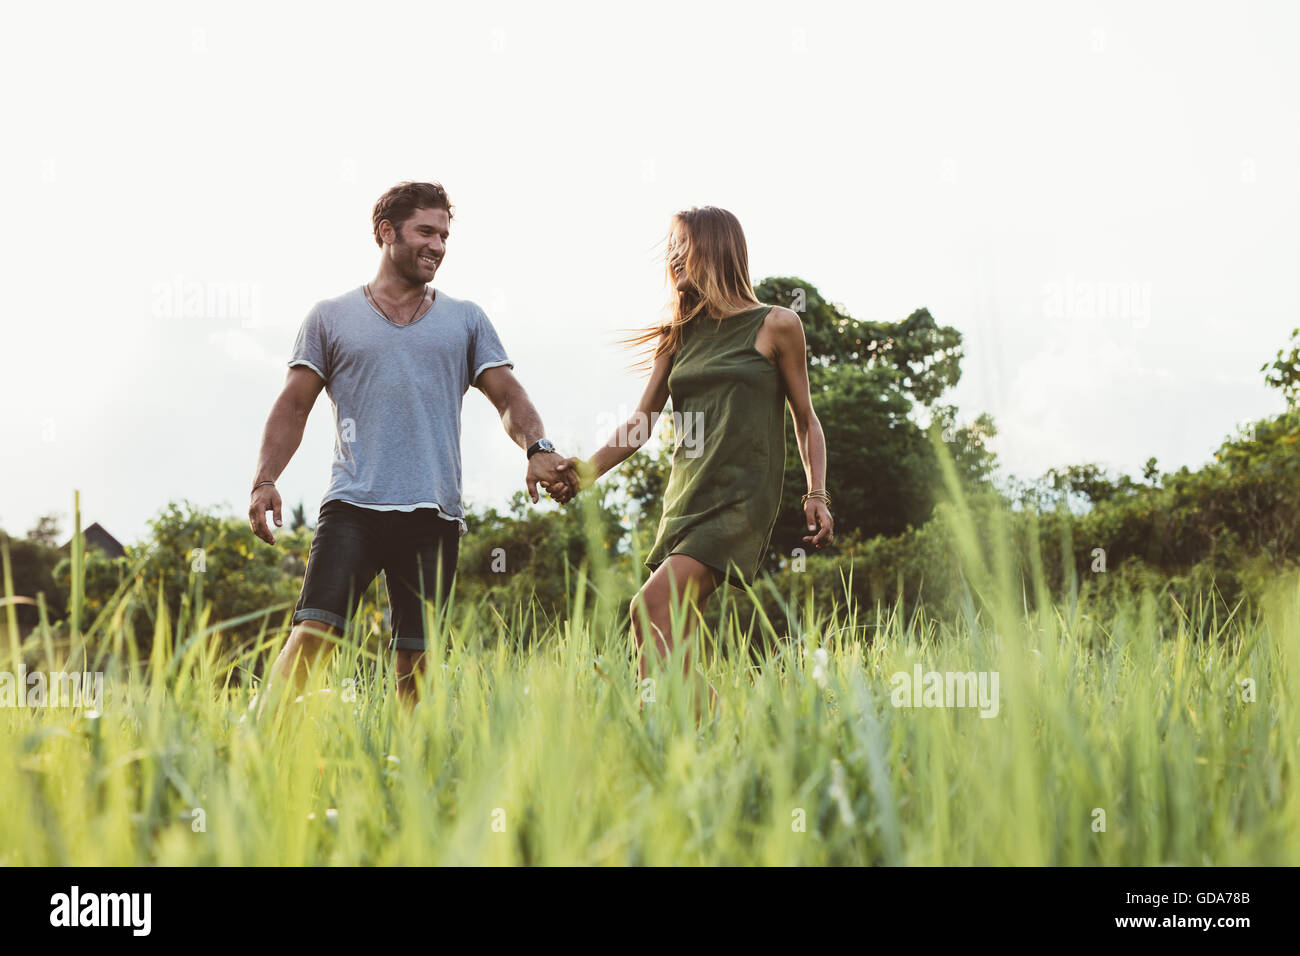 Foto de joven pareja caminando en la pradera. El hombre y la mujer tomados de la mano y caminar juntos en el campo de hierba alta. Foto de stock